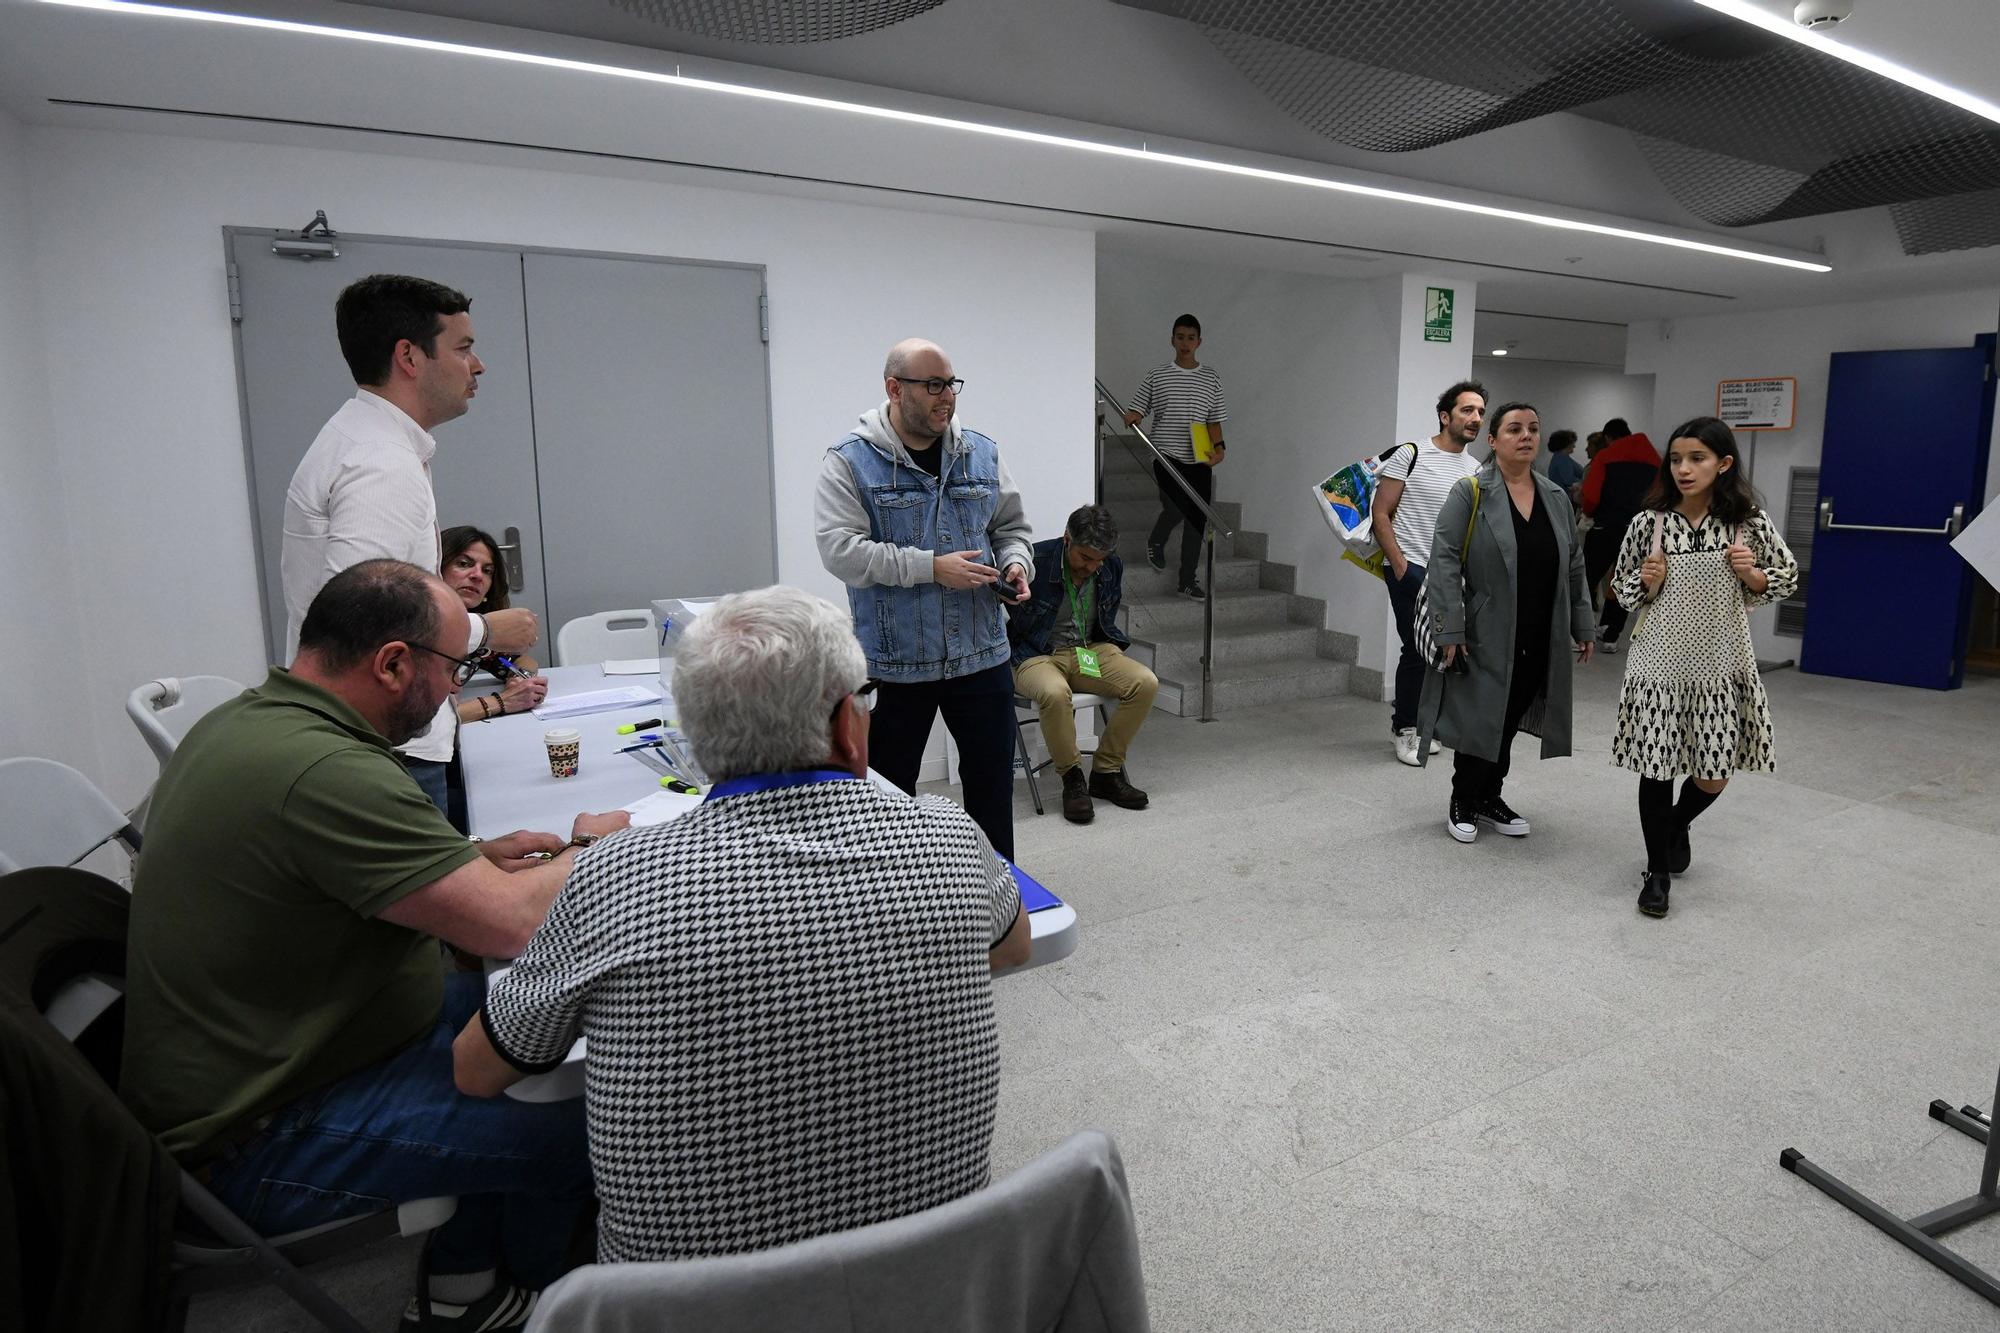 Las mejores imágenes de la jornada electoral en Pontevedra